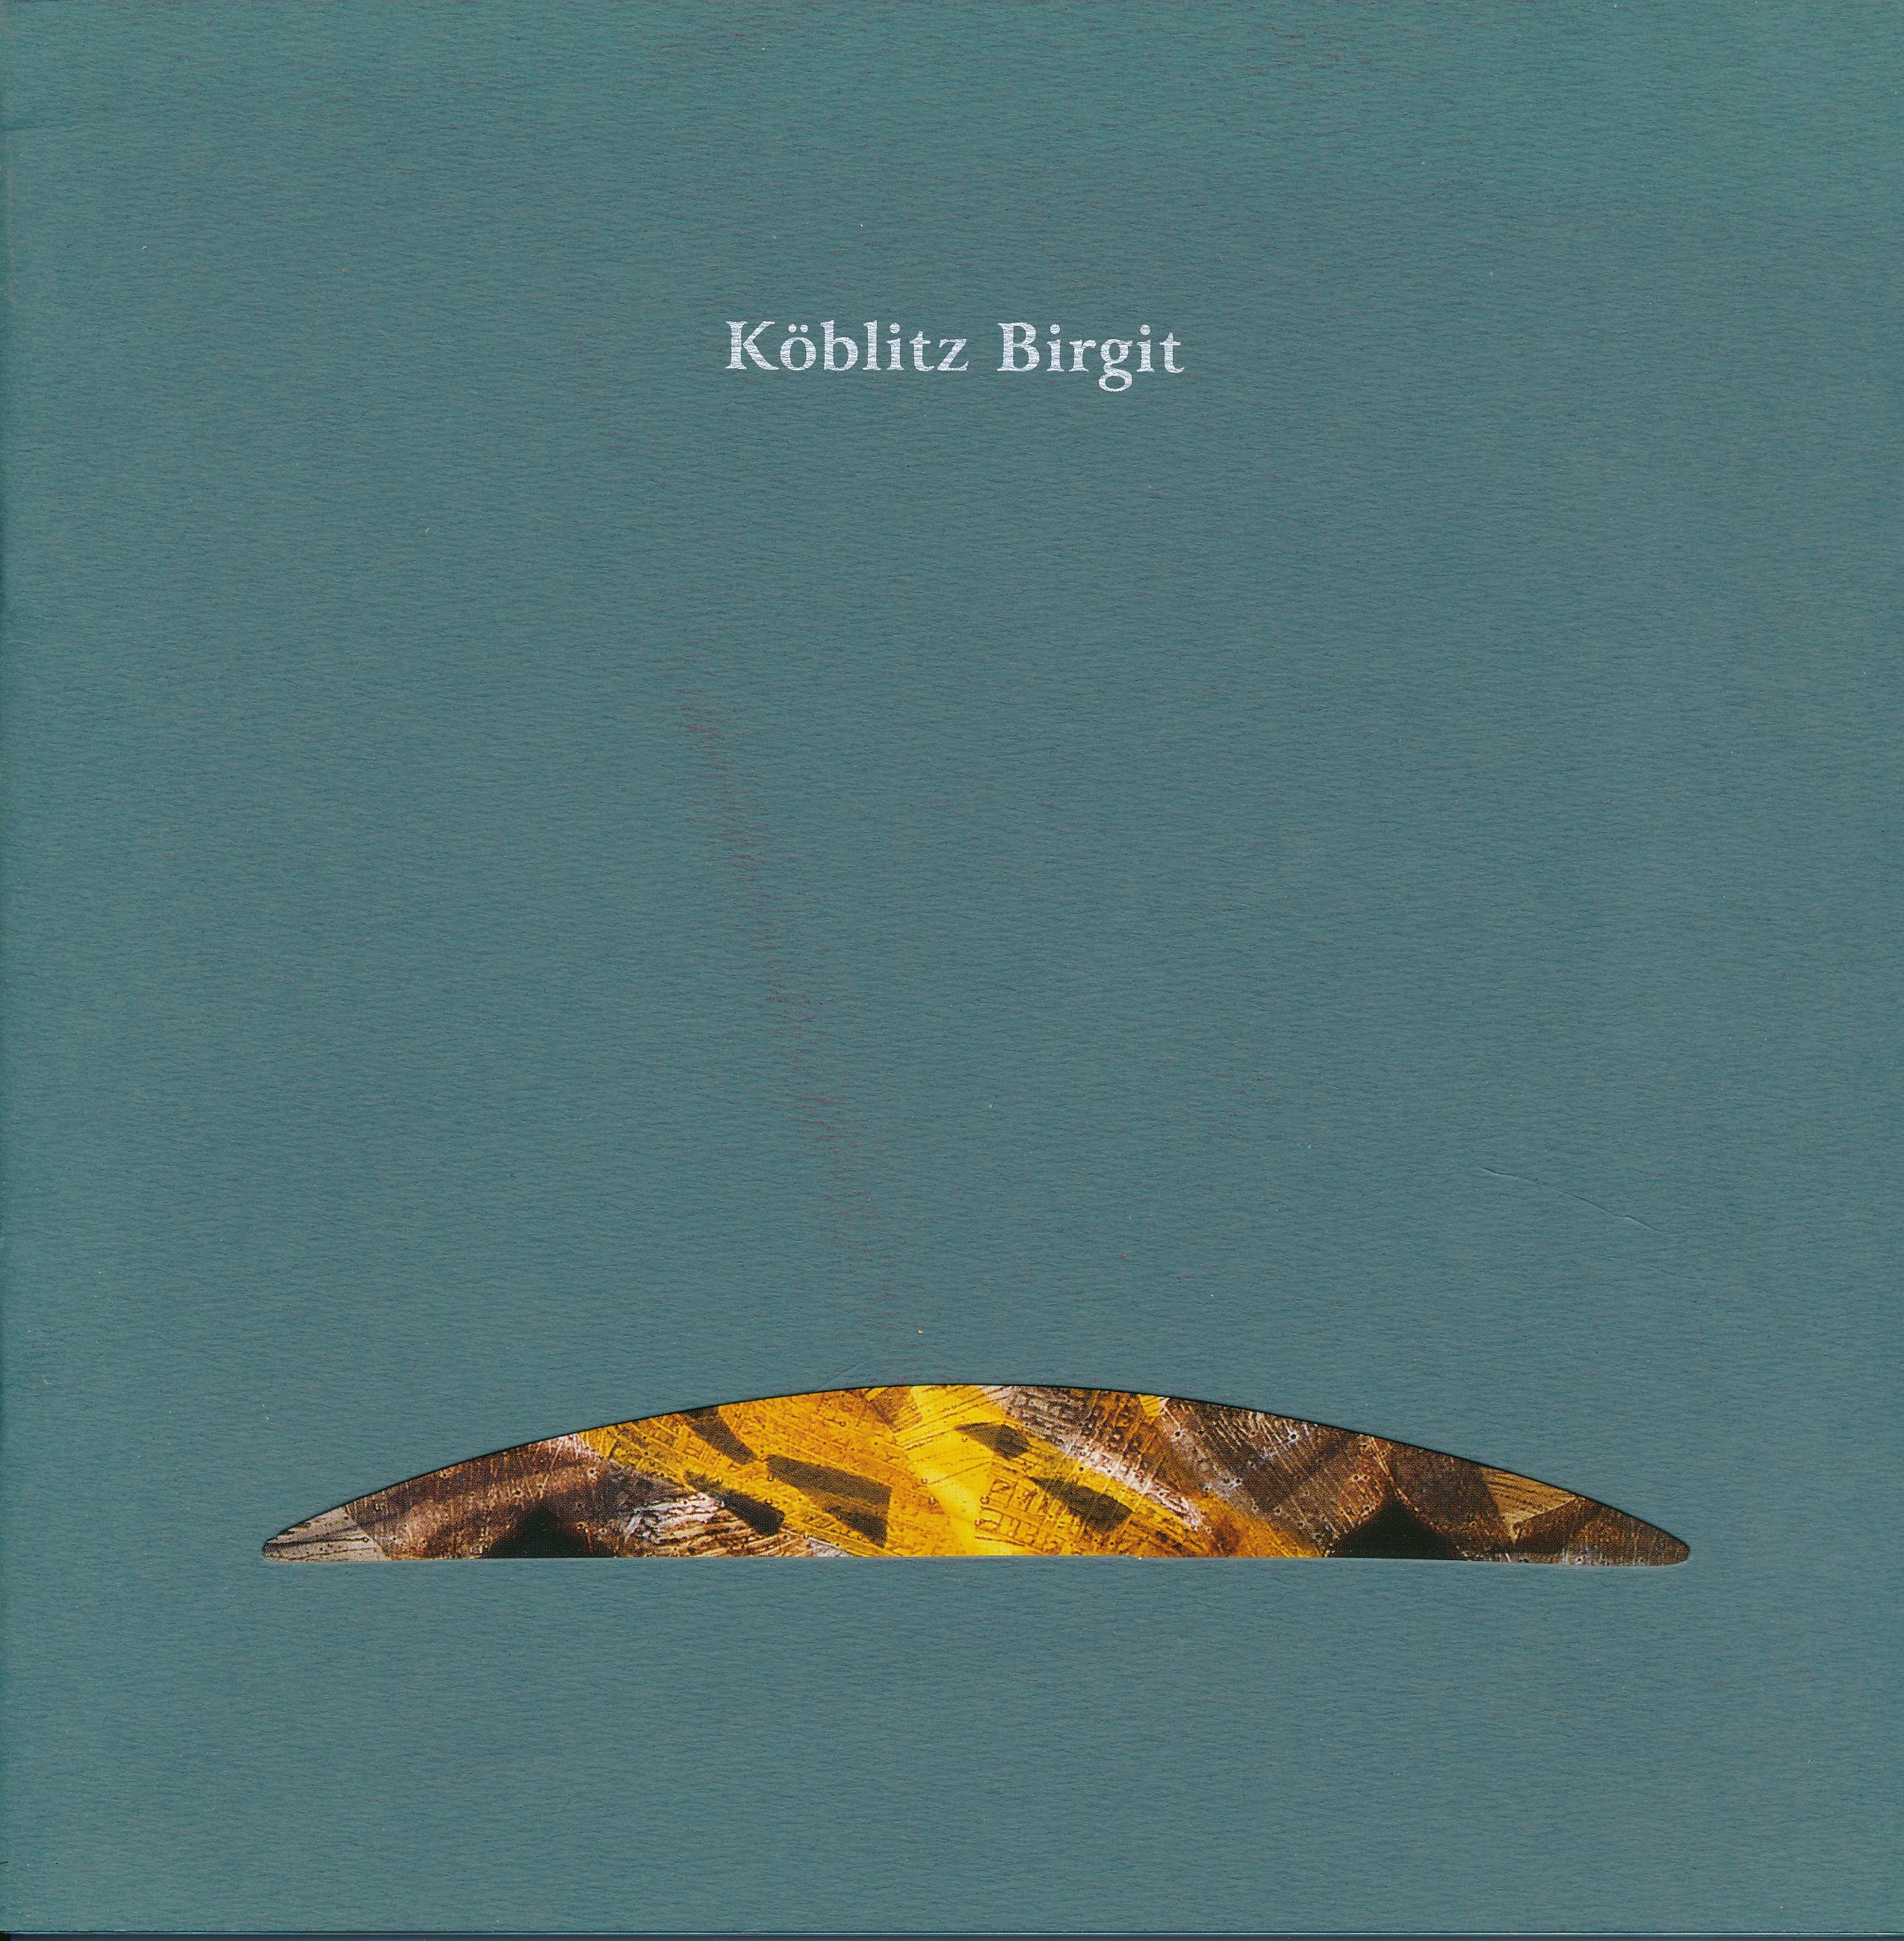 Köblitz Birgit kiállítási katalógus (Design DigiTár – Iparművészeti archívum CC BY-NC-SA)